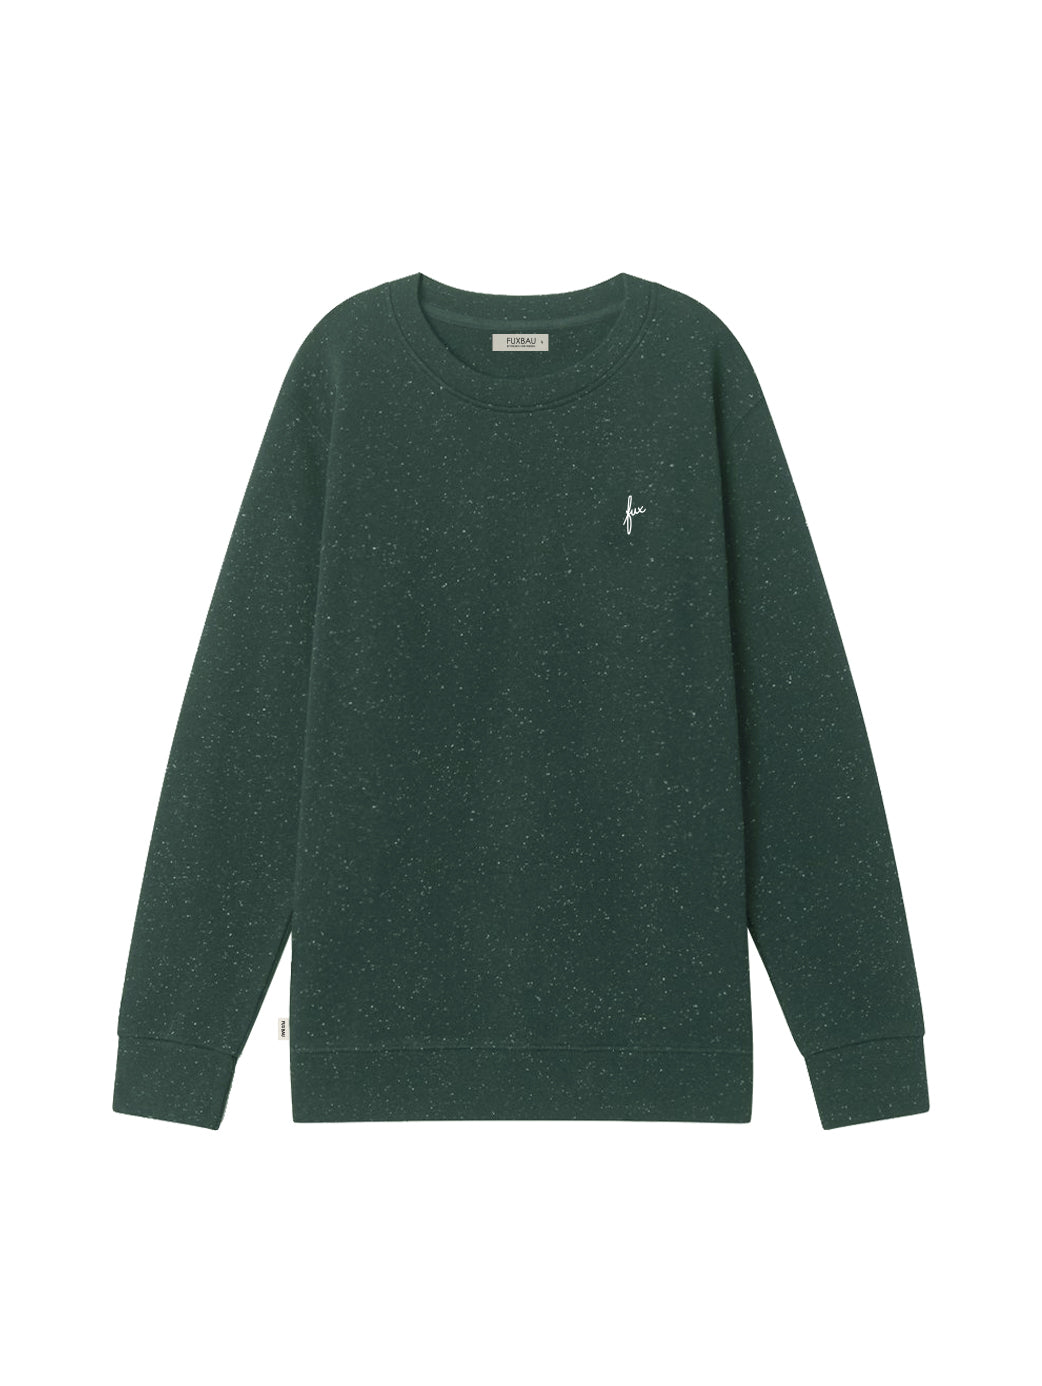 Produktbild eines nachaltigen Männer Sweater von FUXBAU in grün mit weissen neps Made in Portugal.